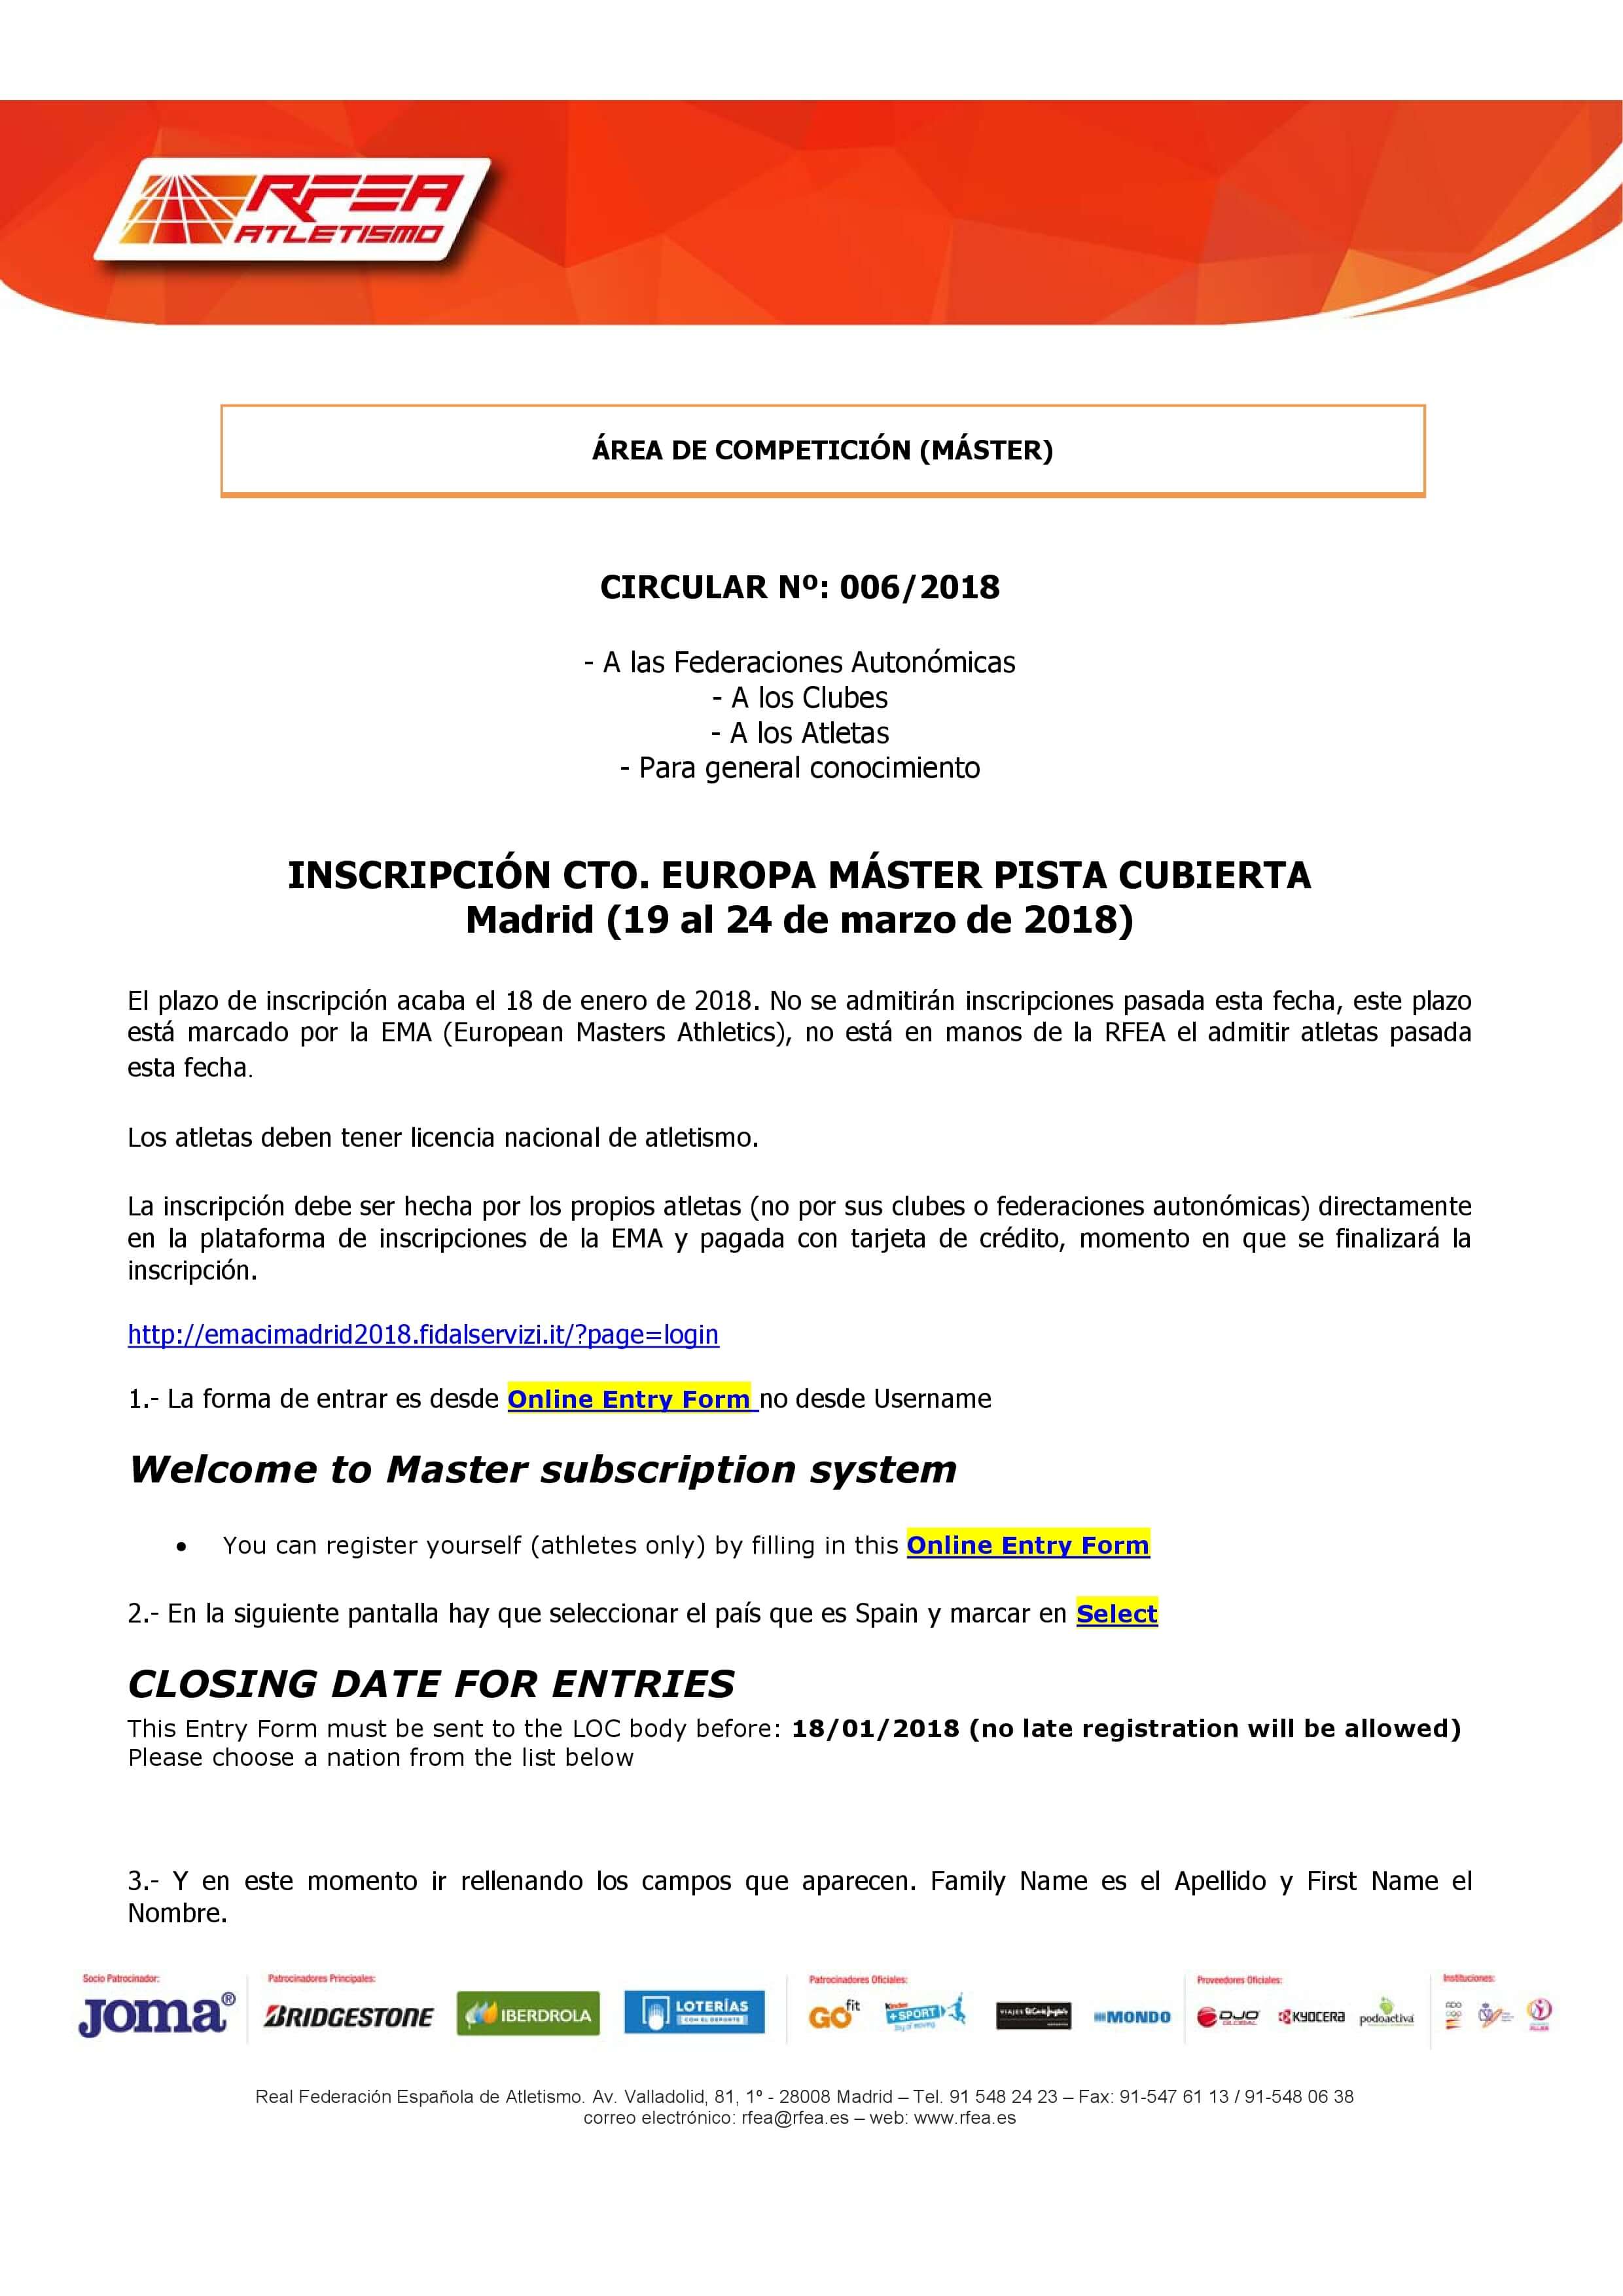 INFORMACION INSCRIPCION CTO EUROPA VETERANOS PISTA CUBIERTA MADRID.pdf page 2 2